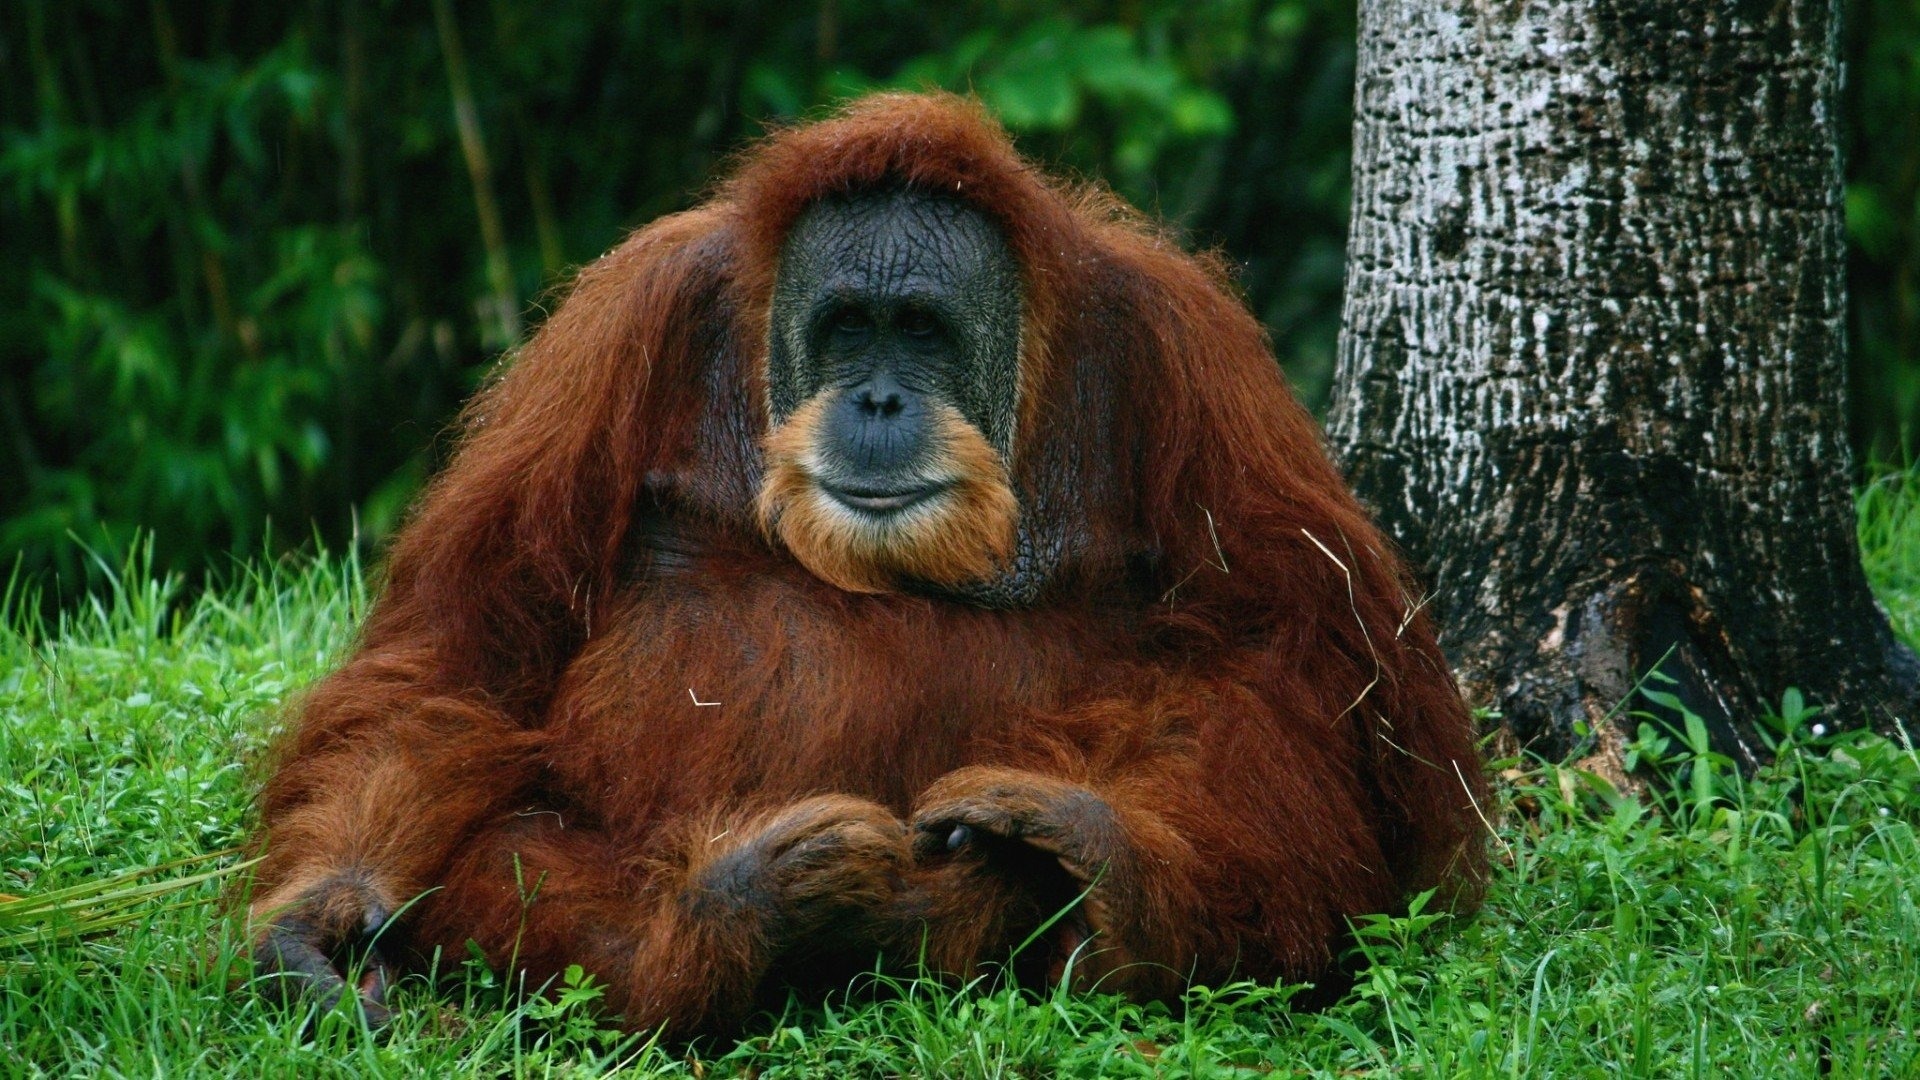 An orangutan sits on green grass